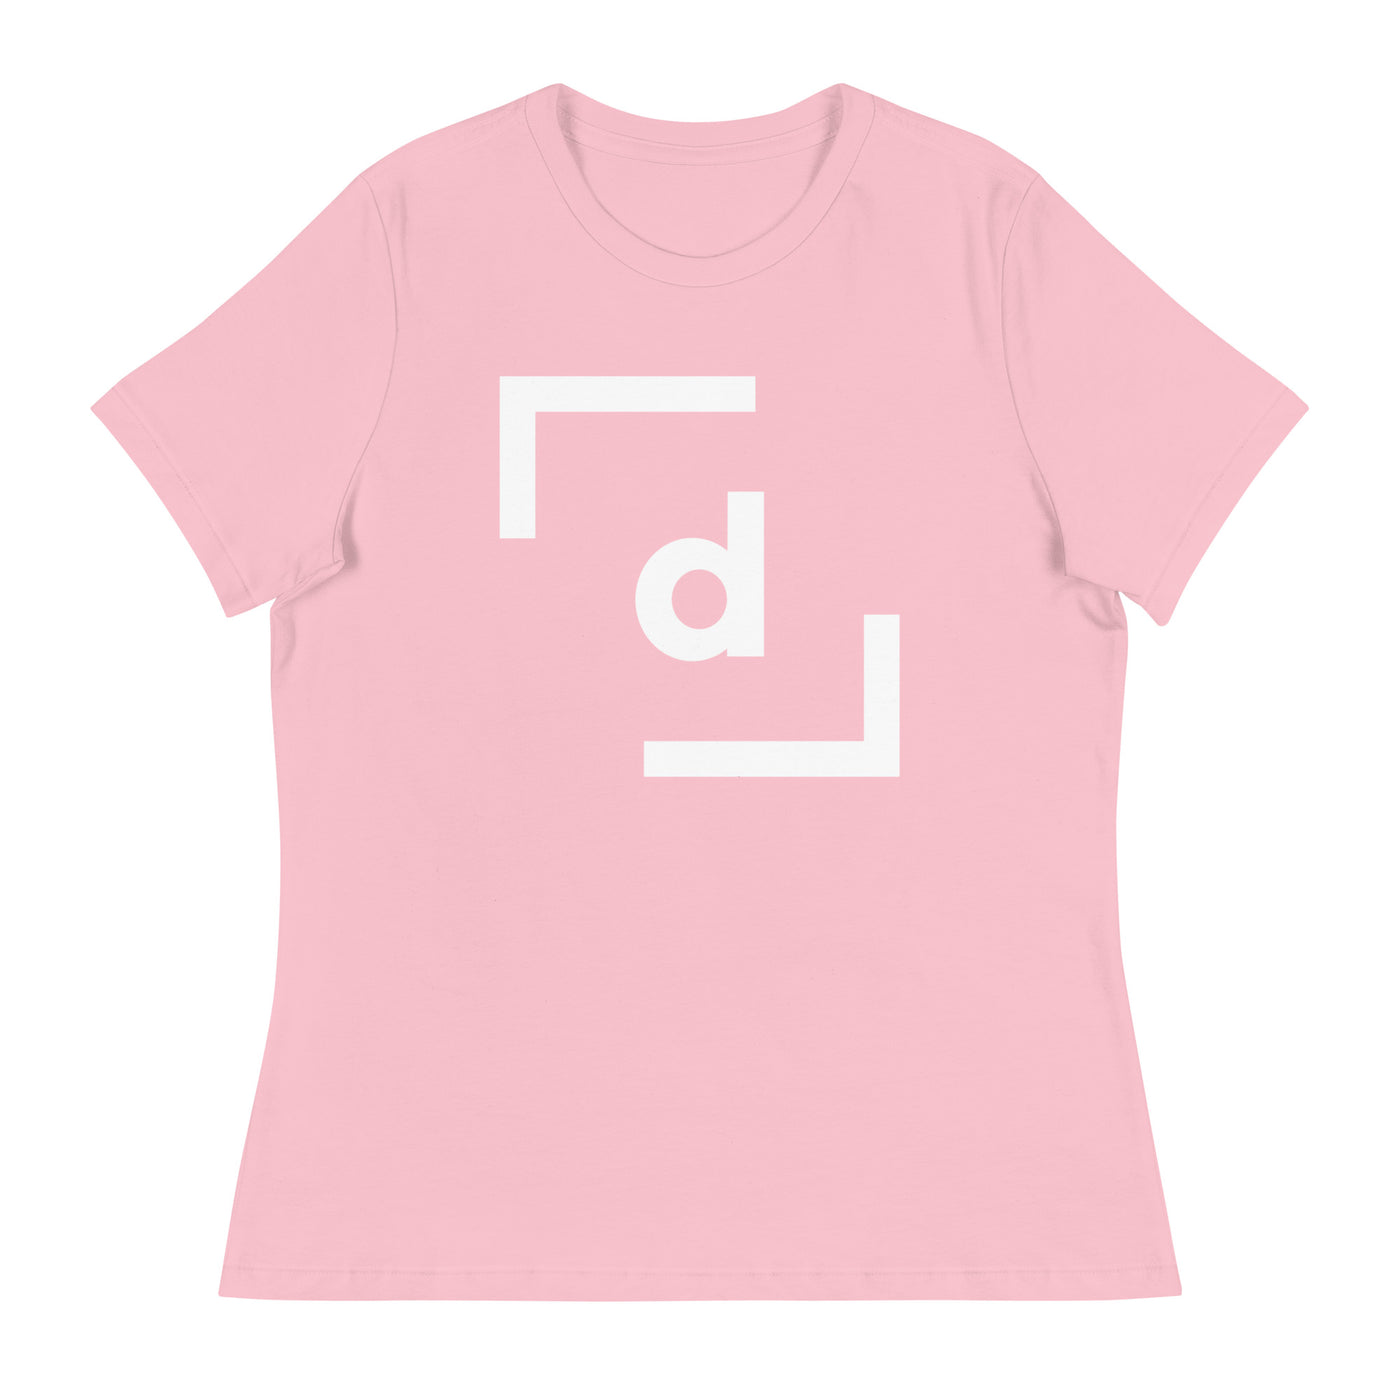 D’ Basic Tee (Women) - White Logo